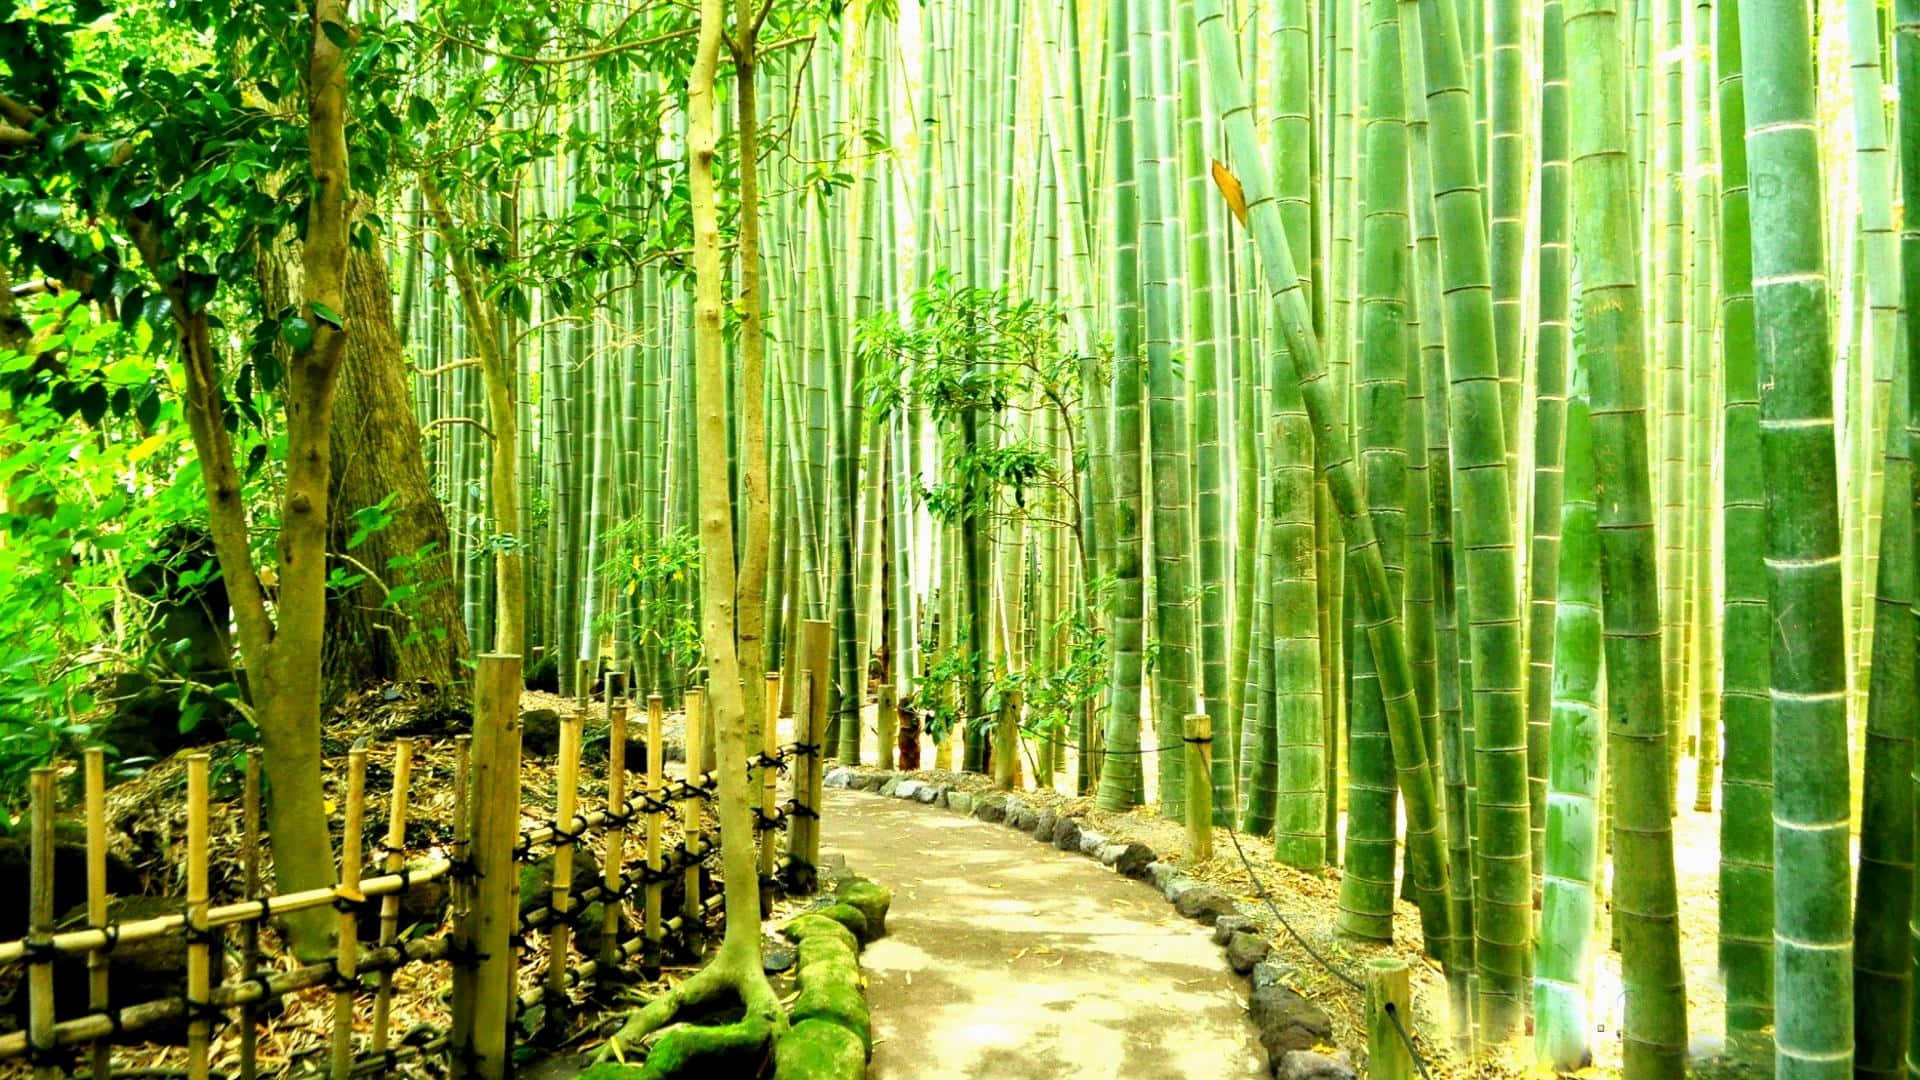 Ståendestolt Och Majestätiskt, Skapar Bambu En Fridfull Miljö.